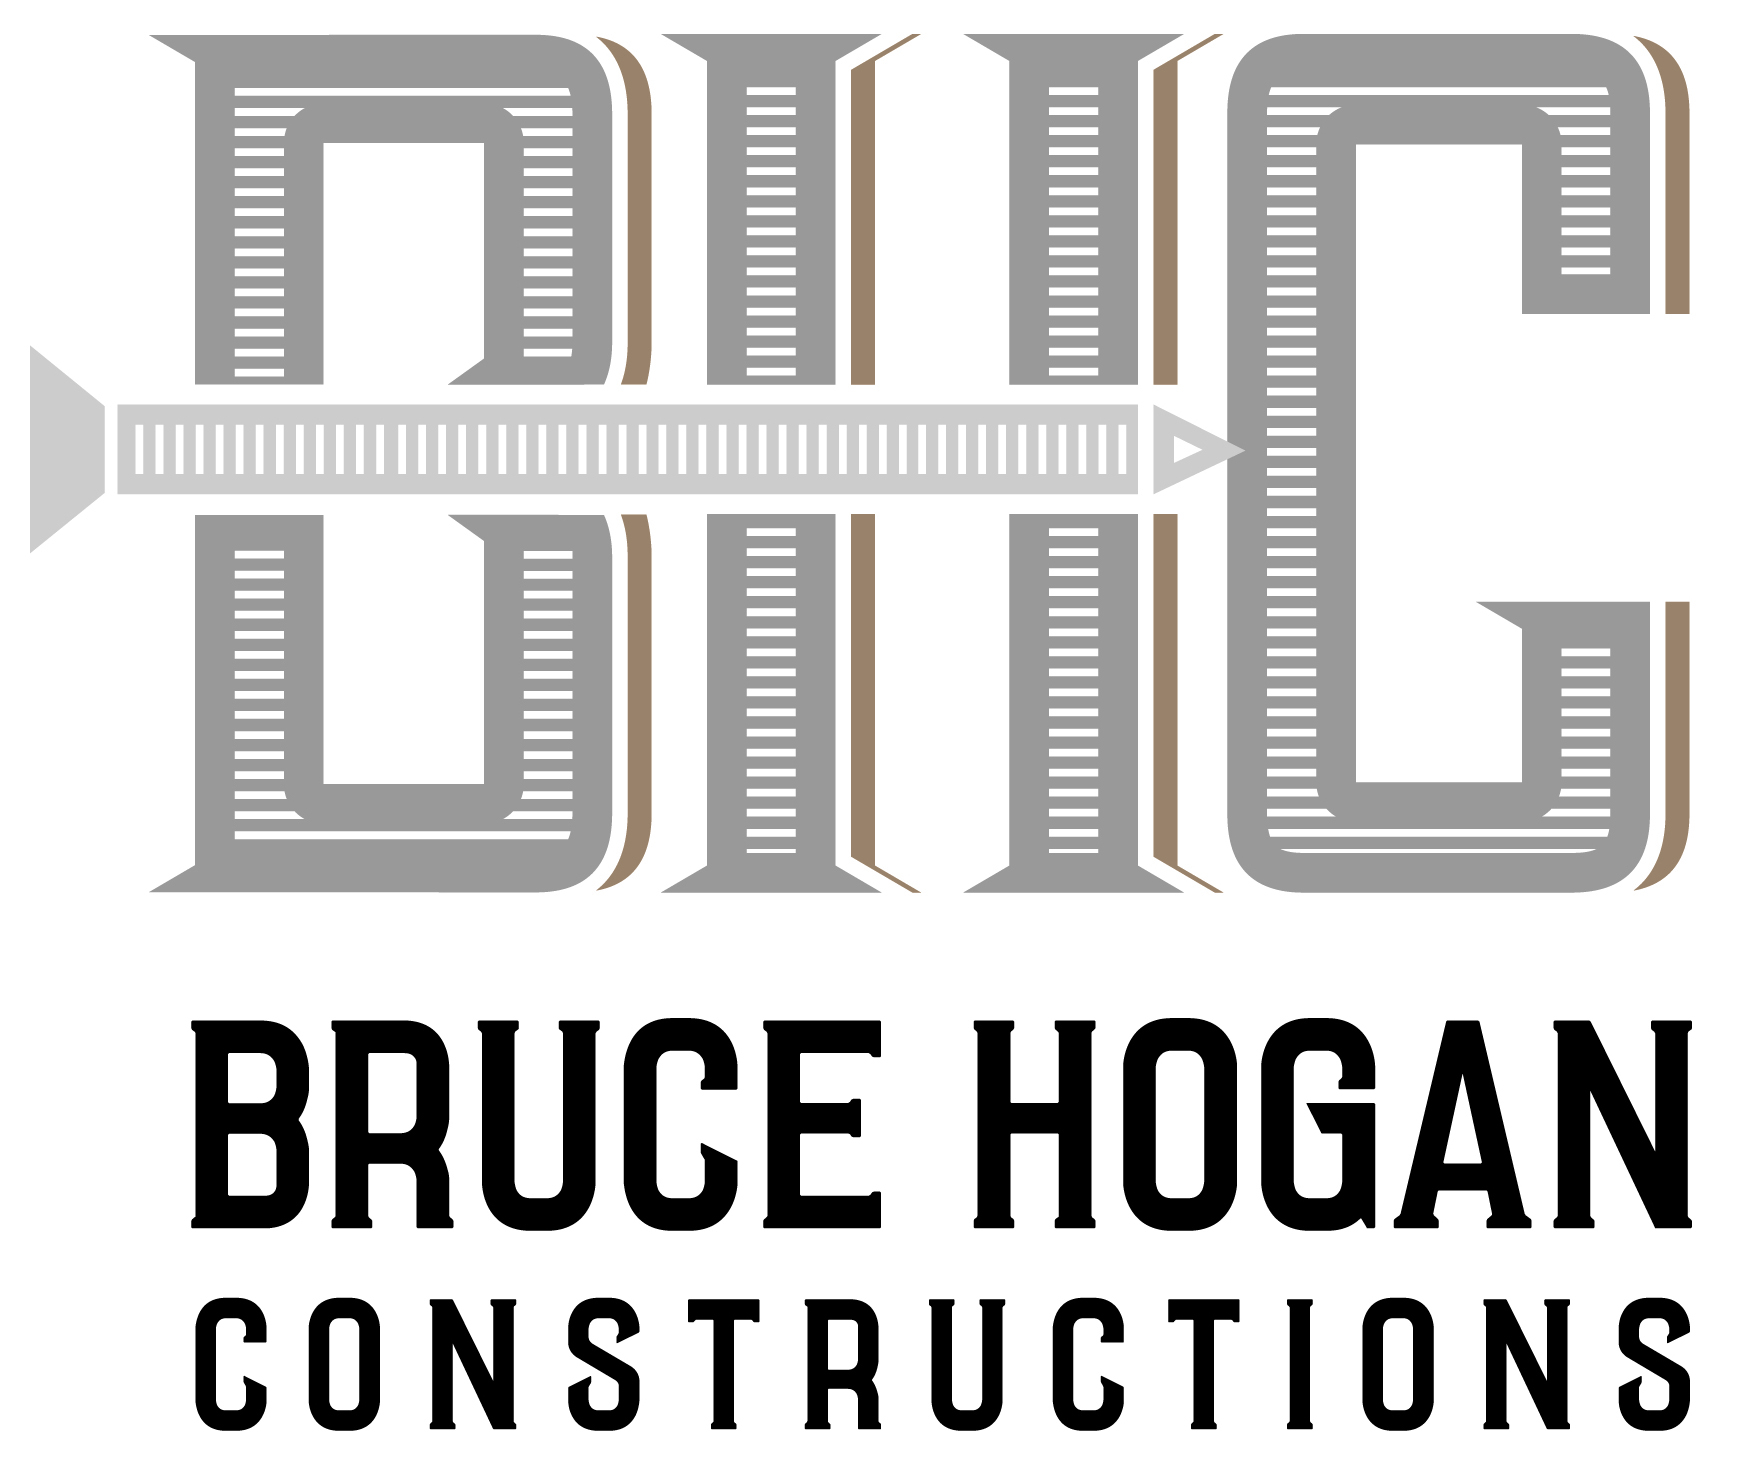 Bruce Hogan Constructions